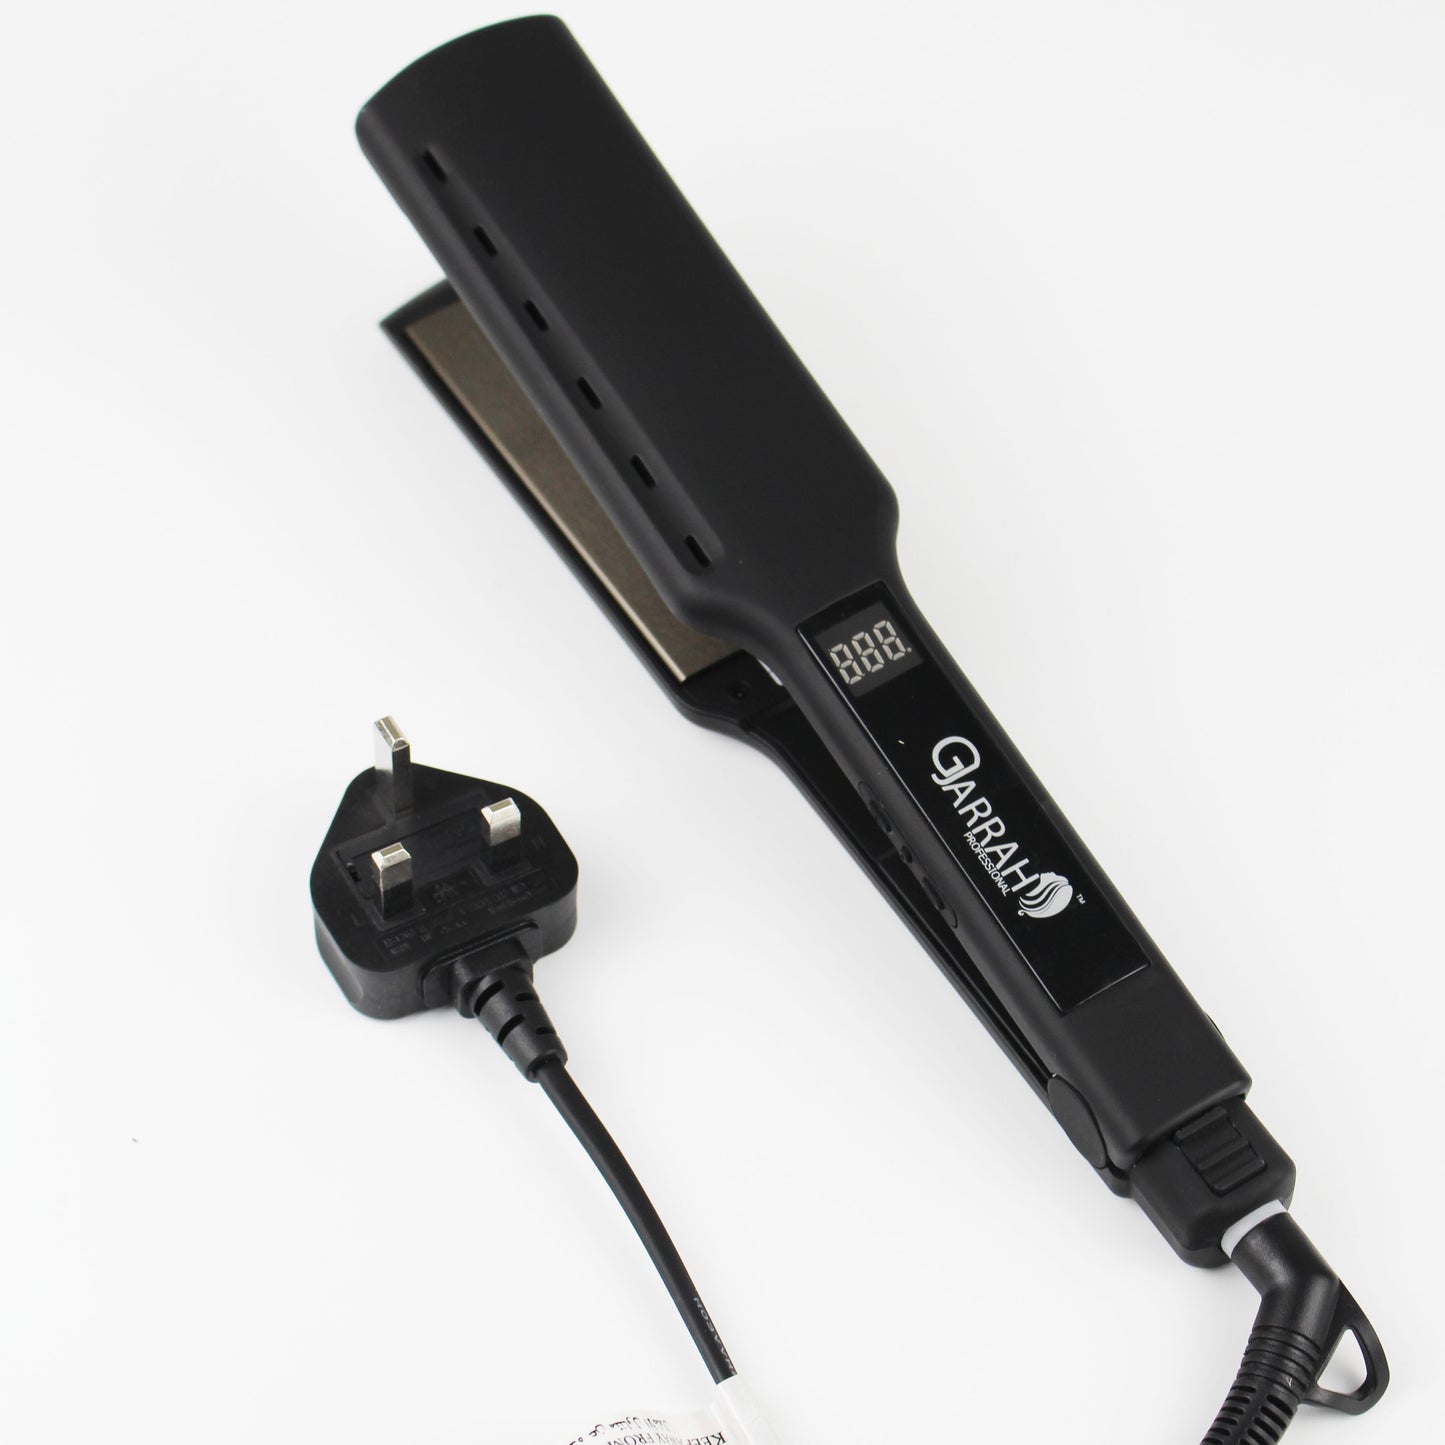 Gjarrah FL-3002 Hair Straightener